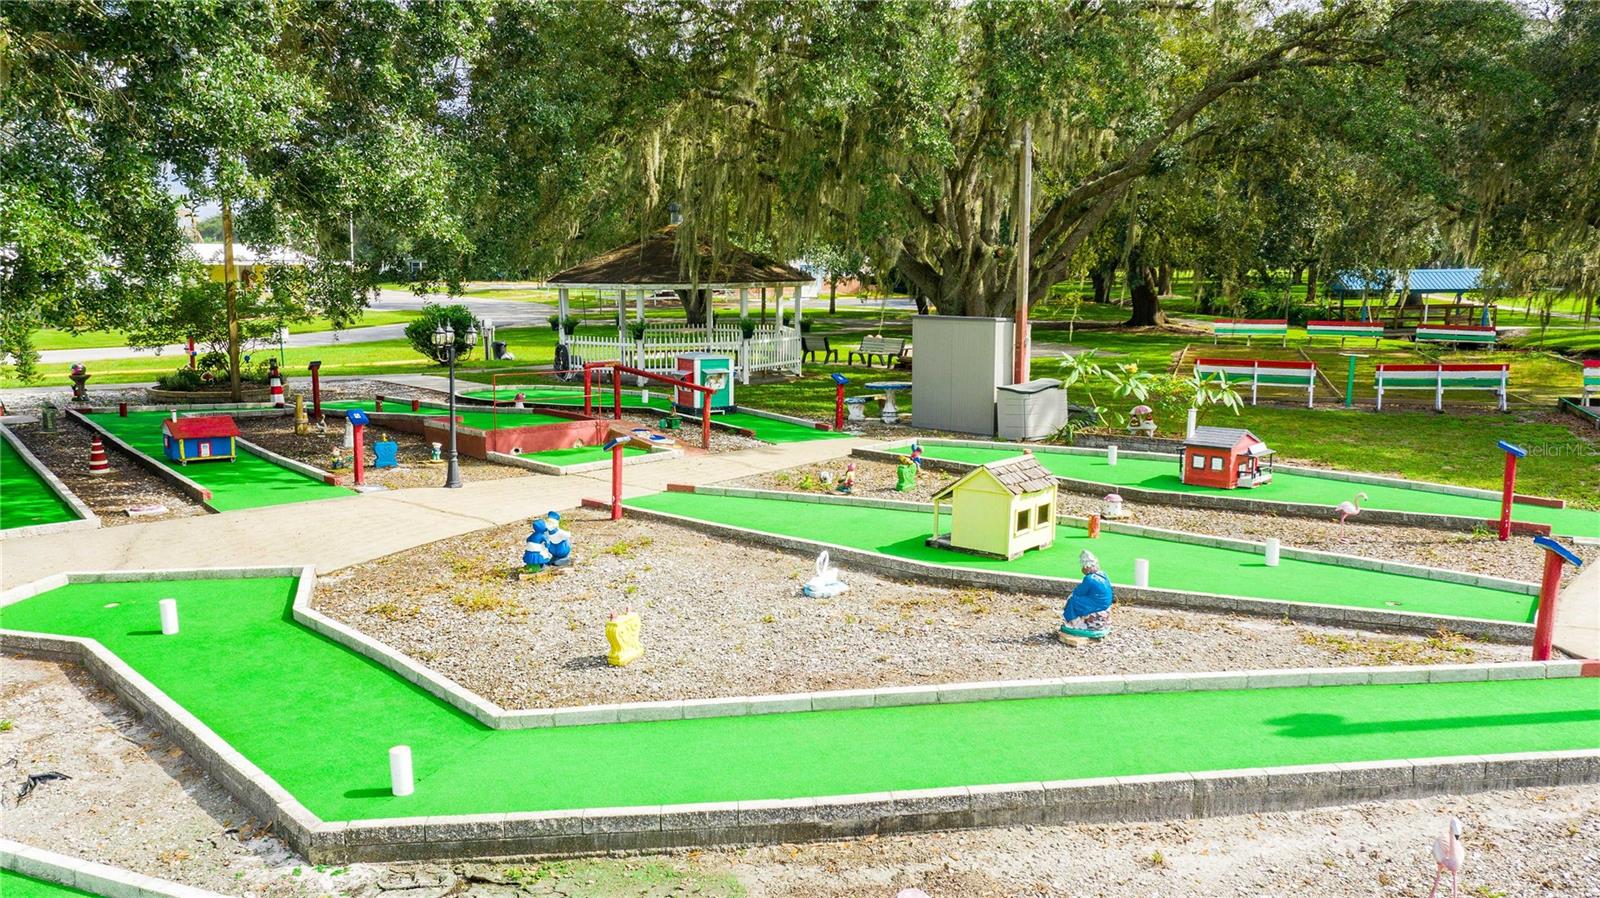 Community has miniature golf area.